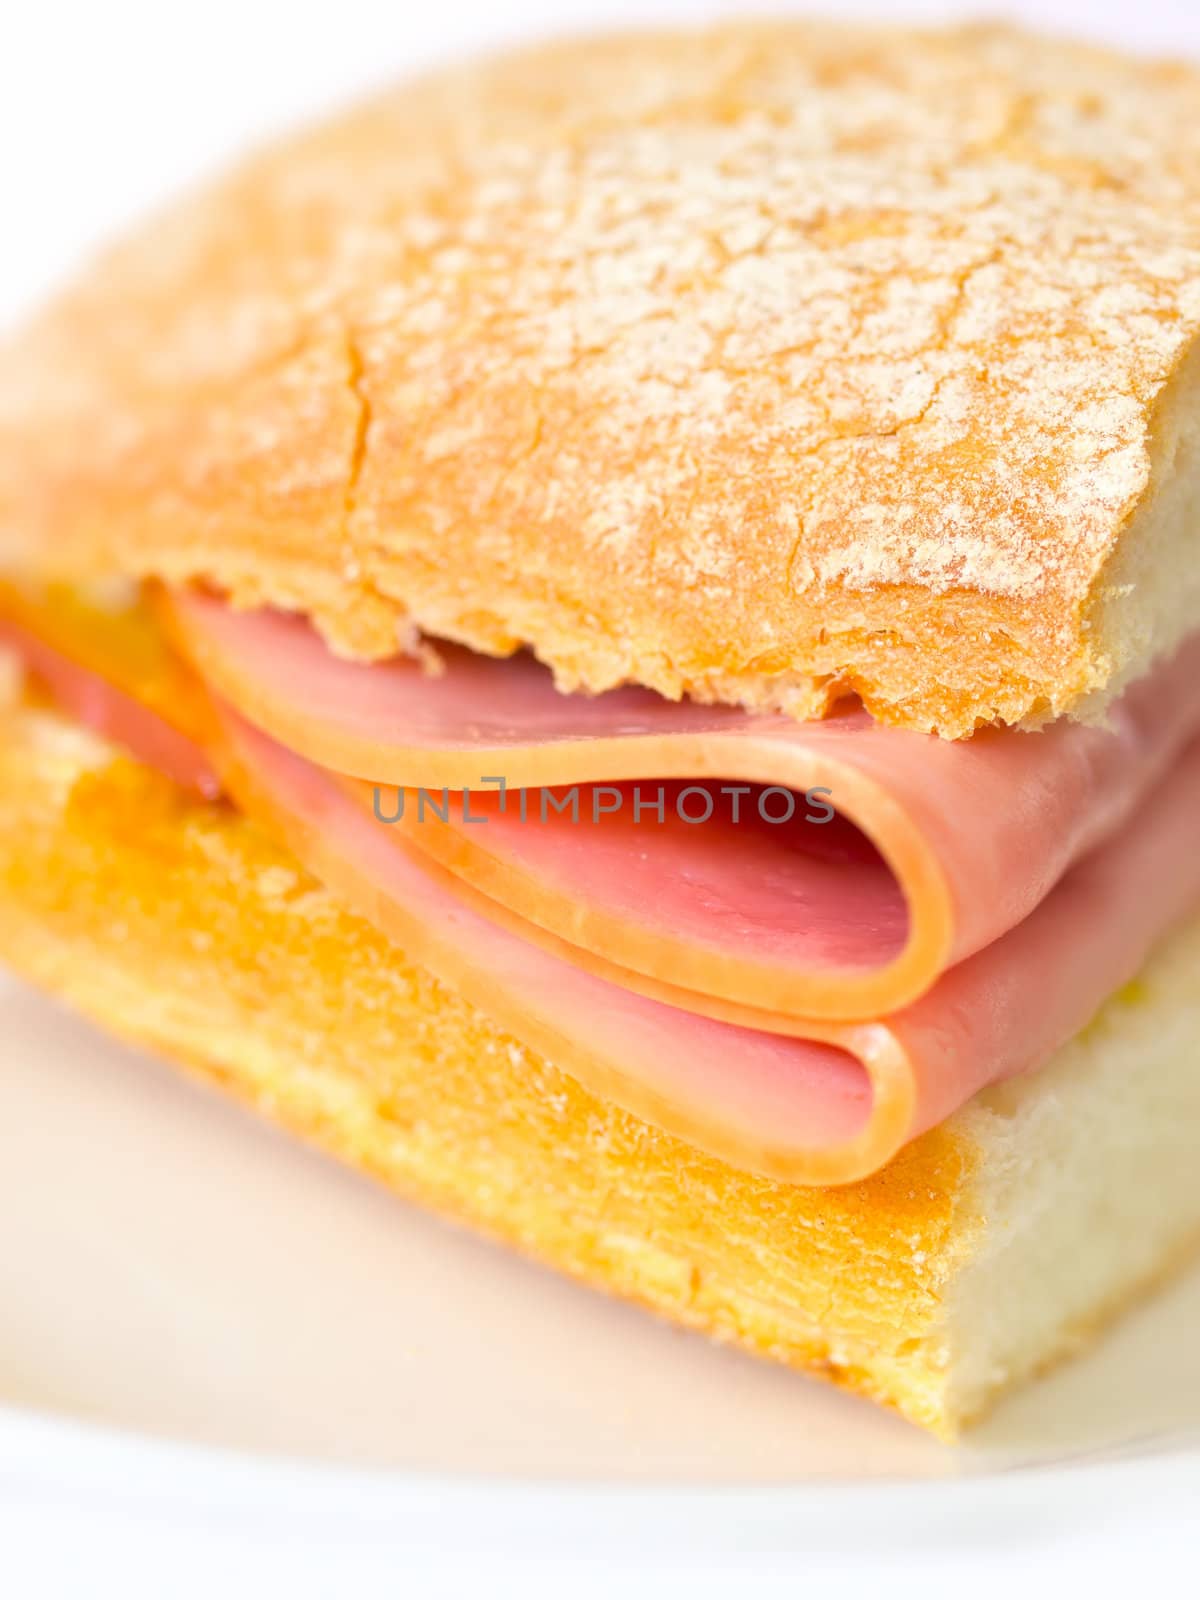 ham sandwich by zkruger